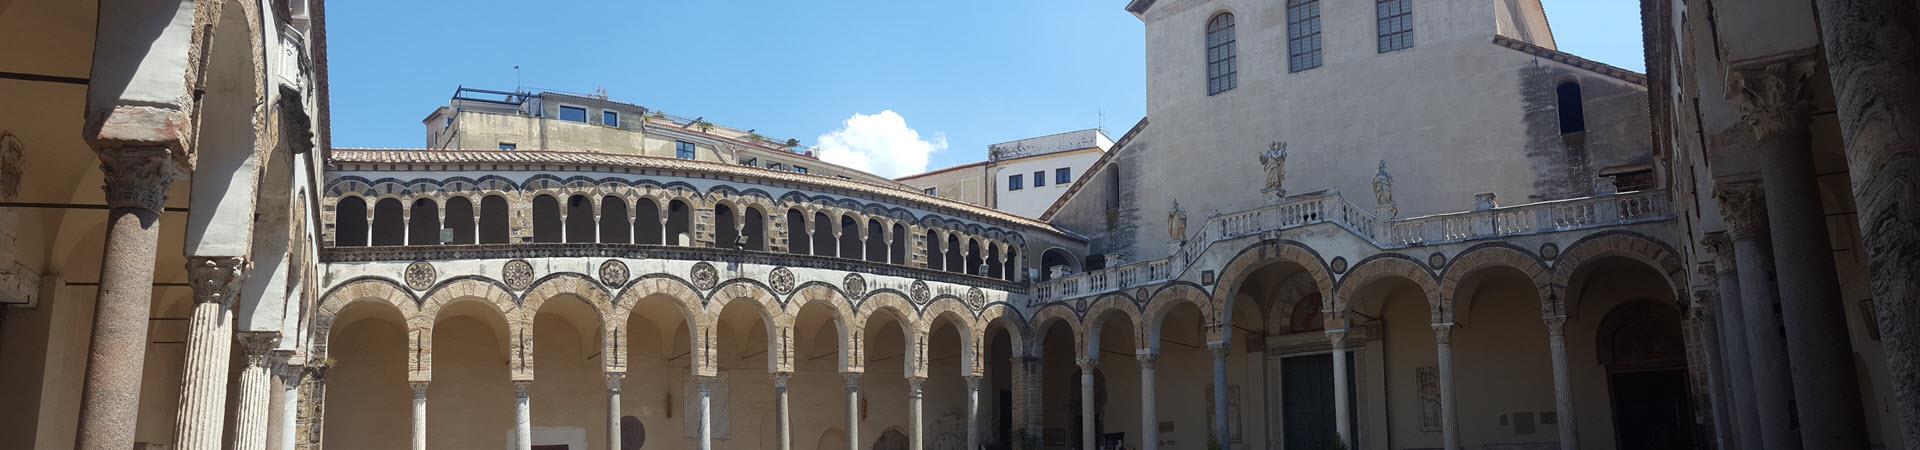 Duomo atrio